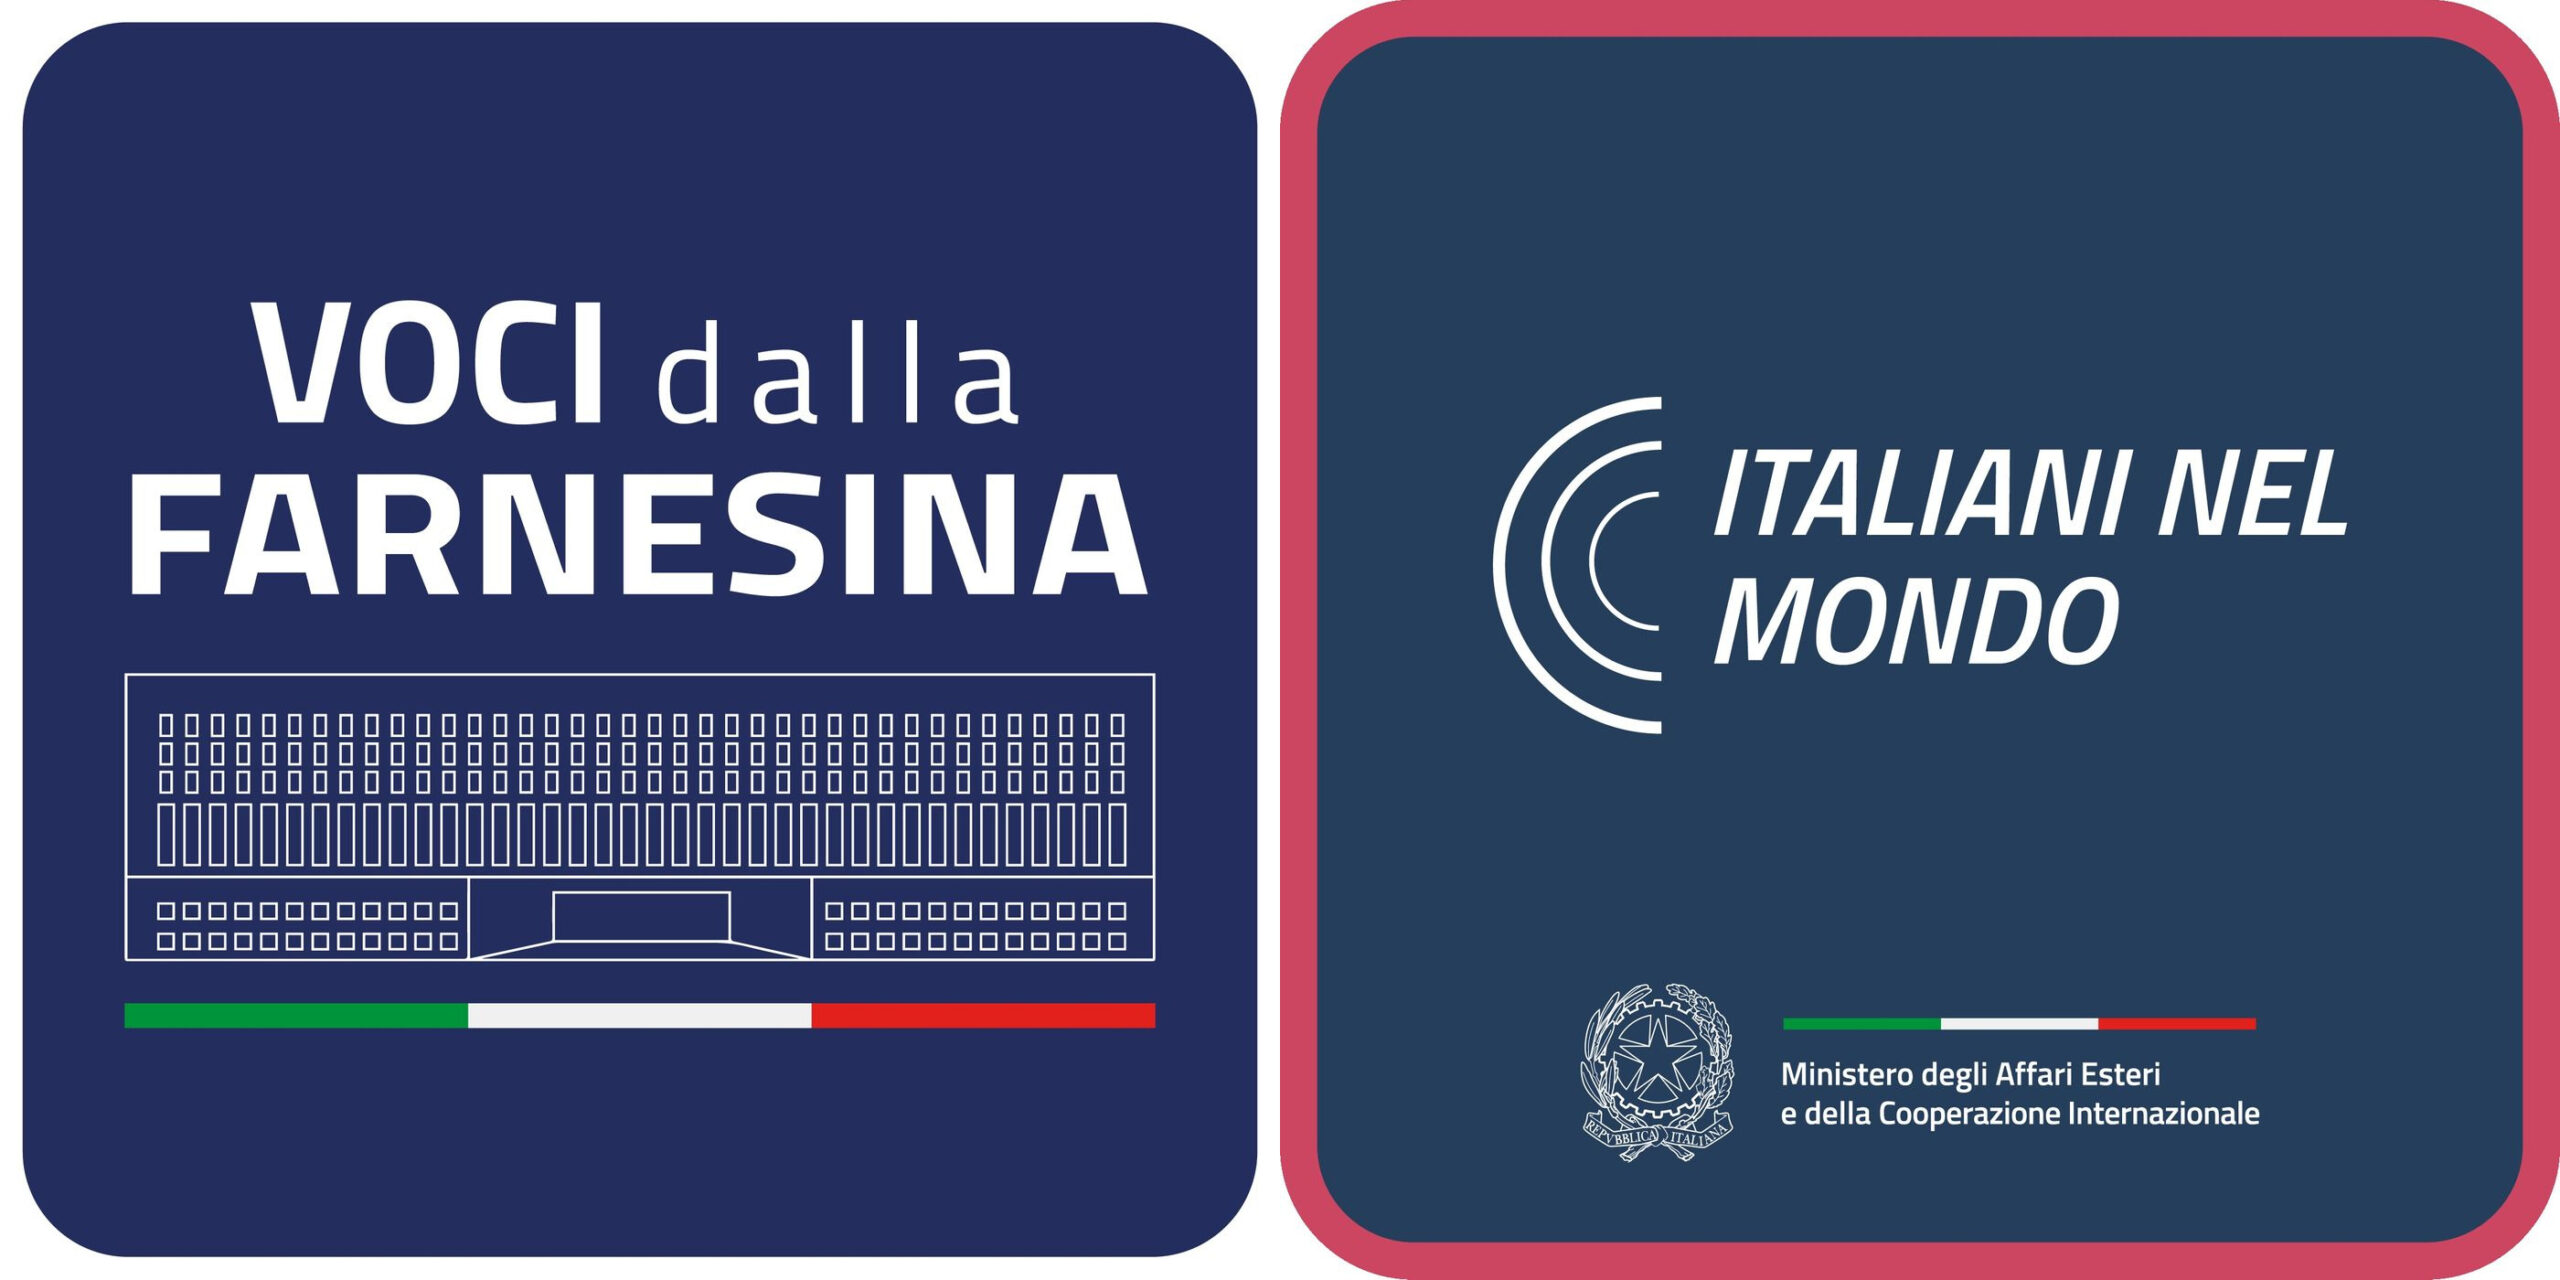 Crasis a "Voci della Farnesina" és az "Italiani nel mondo" logói között